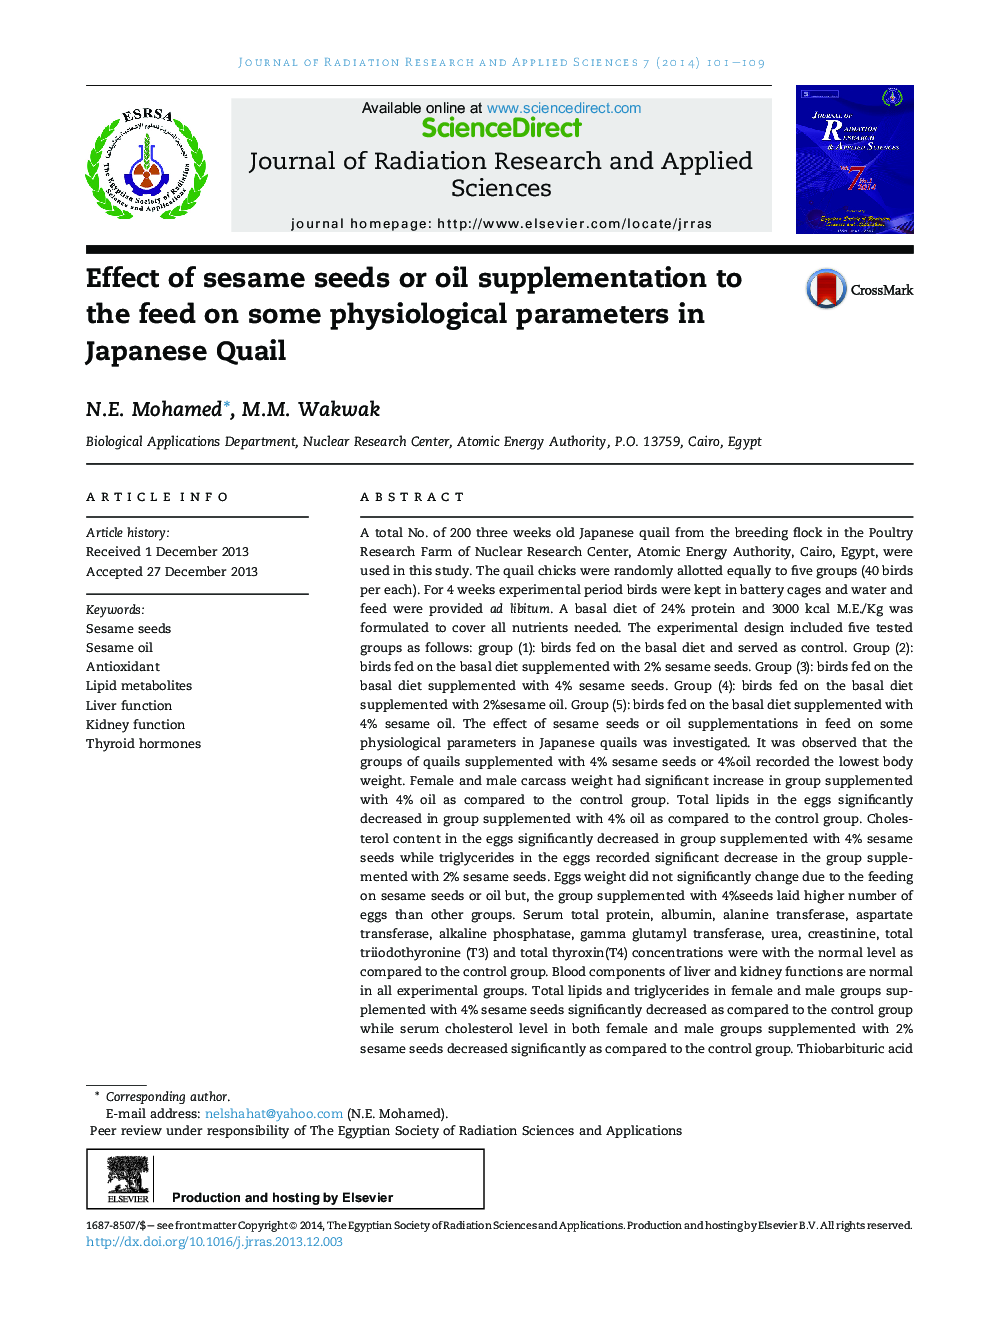 اثر دانه های کنجد و یا مکمل های روغن به خوراک بر روی برخی از پارامترهای فیزیولوژیکی در ژاپن قوچ 